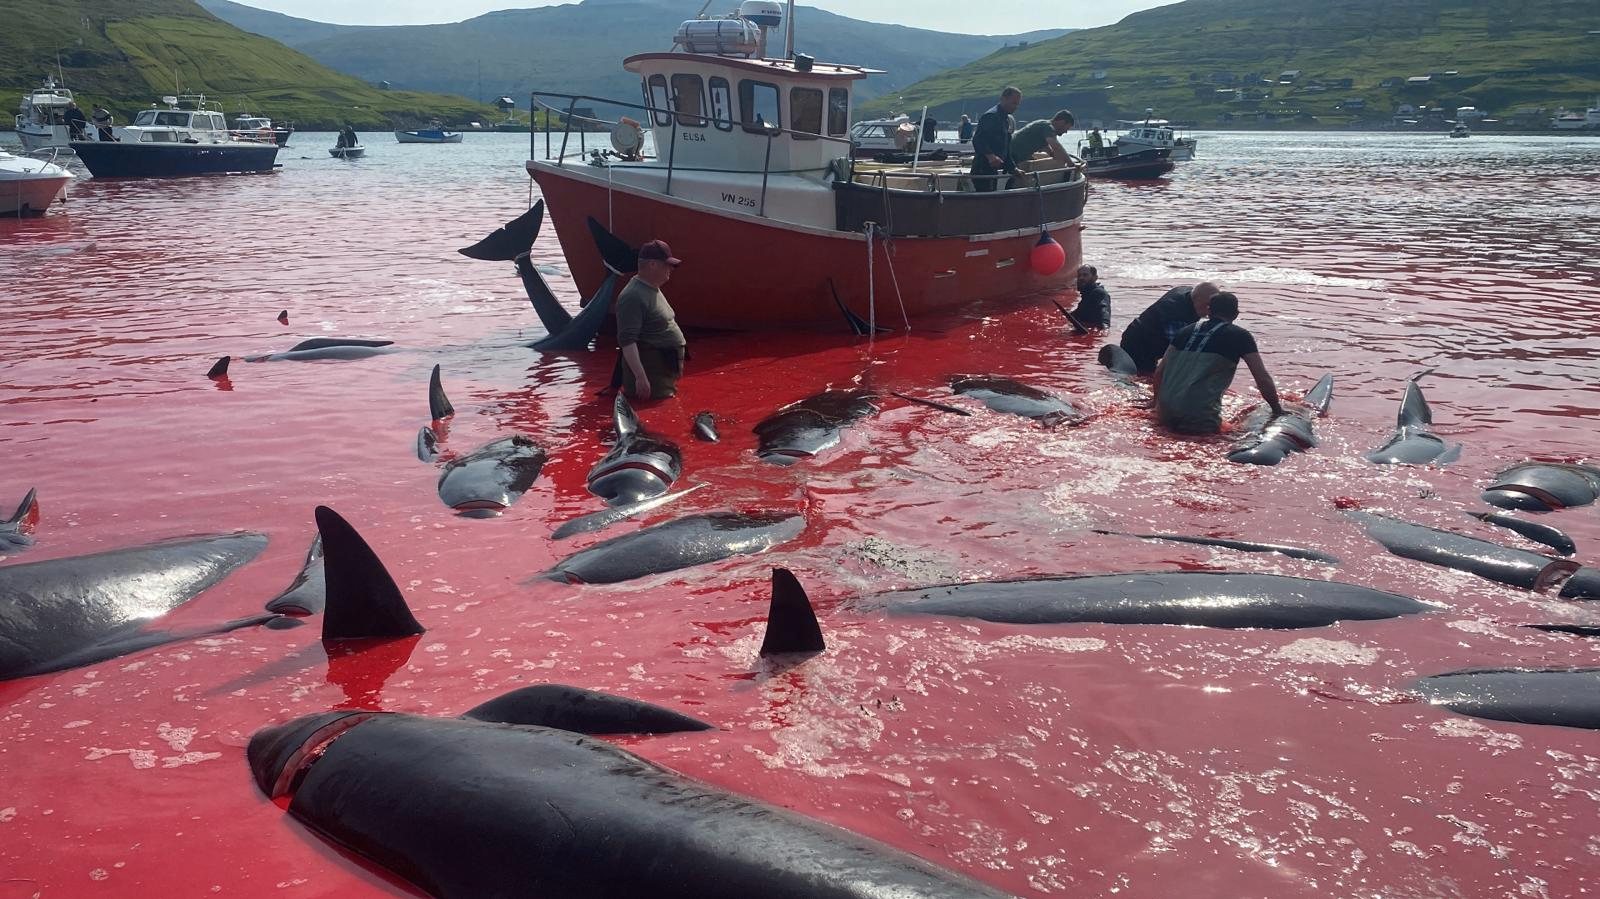 Imagem desta quarta-feira, dia 14 de junho, da baía de Leynar, nas Ilhas Faroé, onde decorreu a 4ª matança do ano